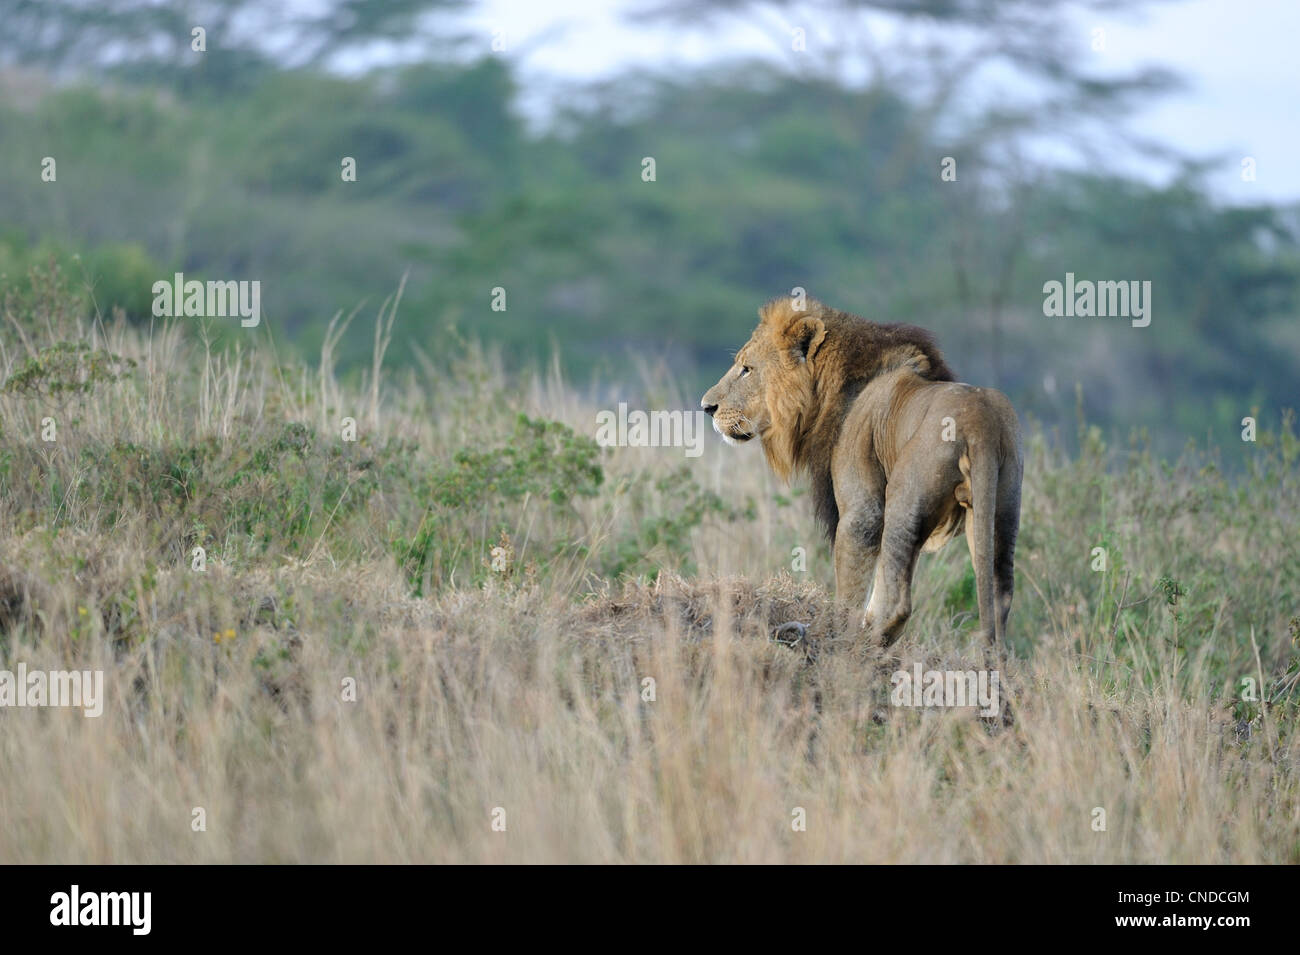 East African Lion - Massai-Löwe (Panthera Leo Nubica) männlich stehend in den Rasen Nakuru NP - Kenia - Ost-Afrika Stockfoto